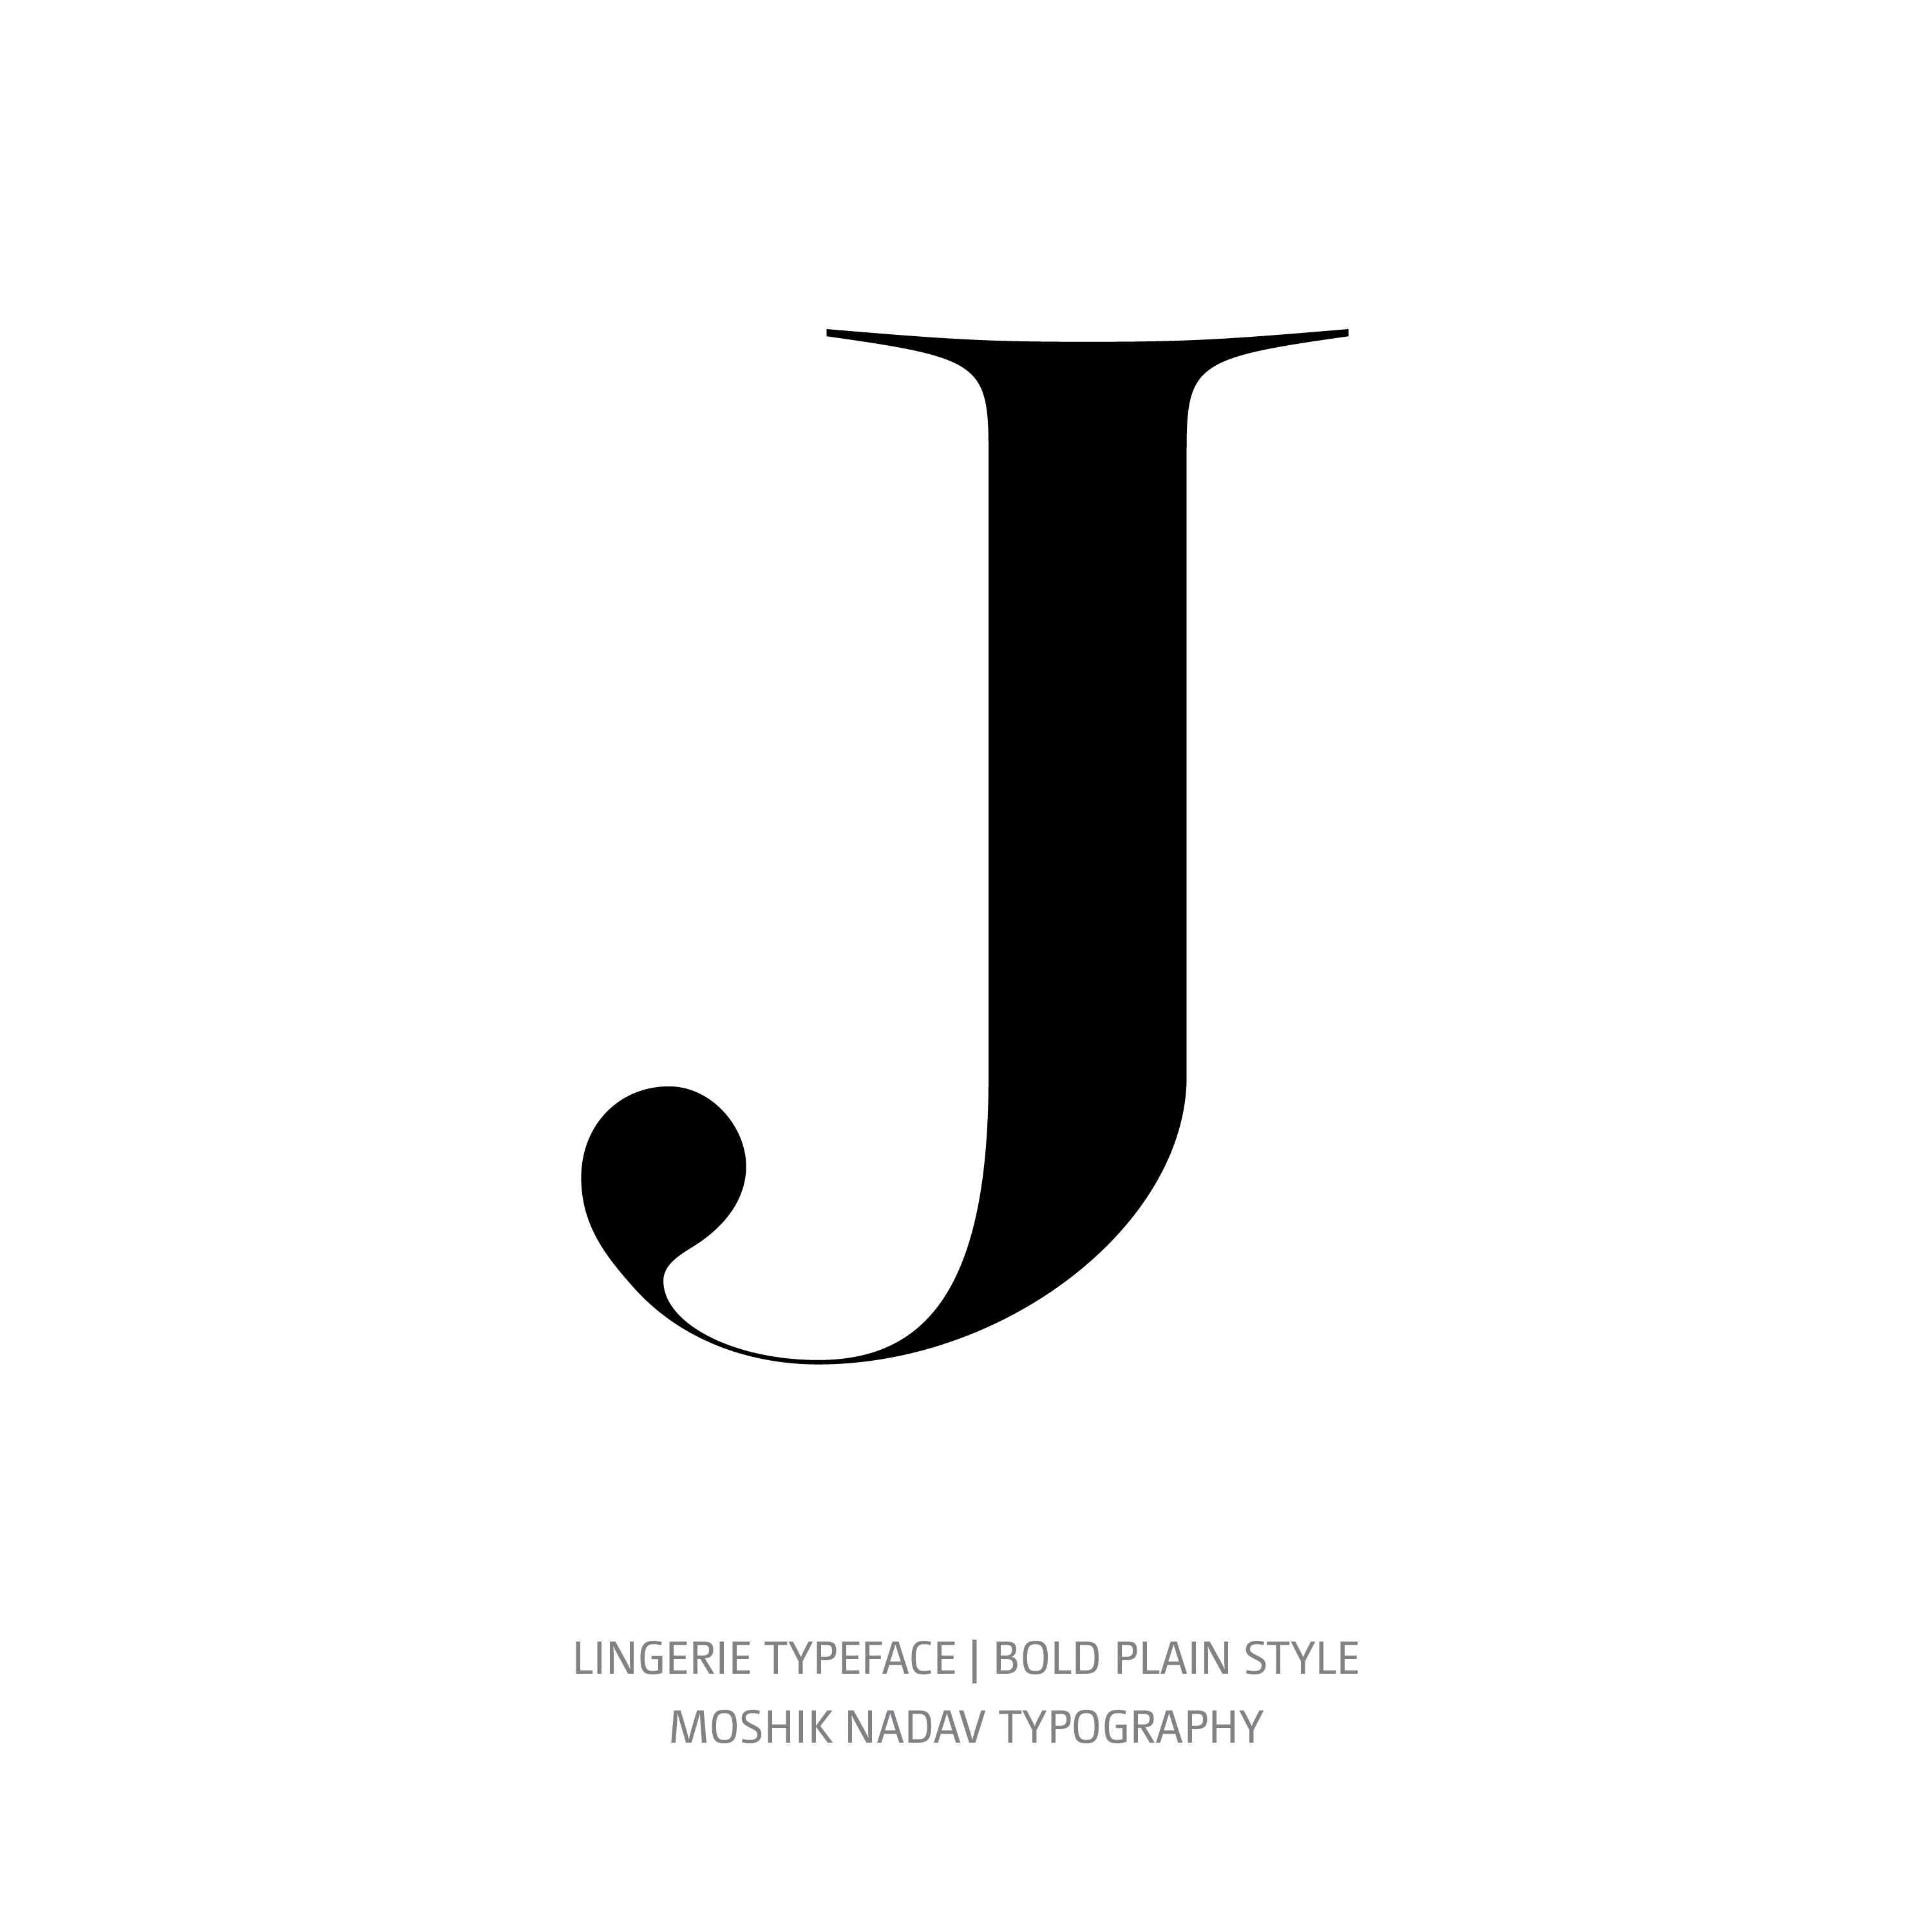 Lingerie Typeface Bold Plain J